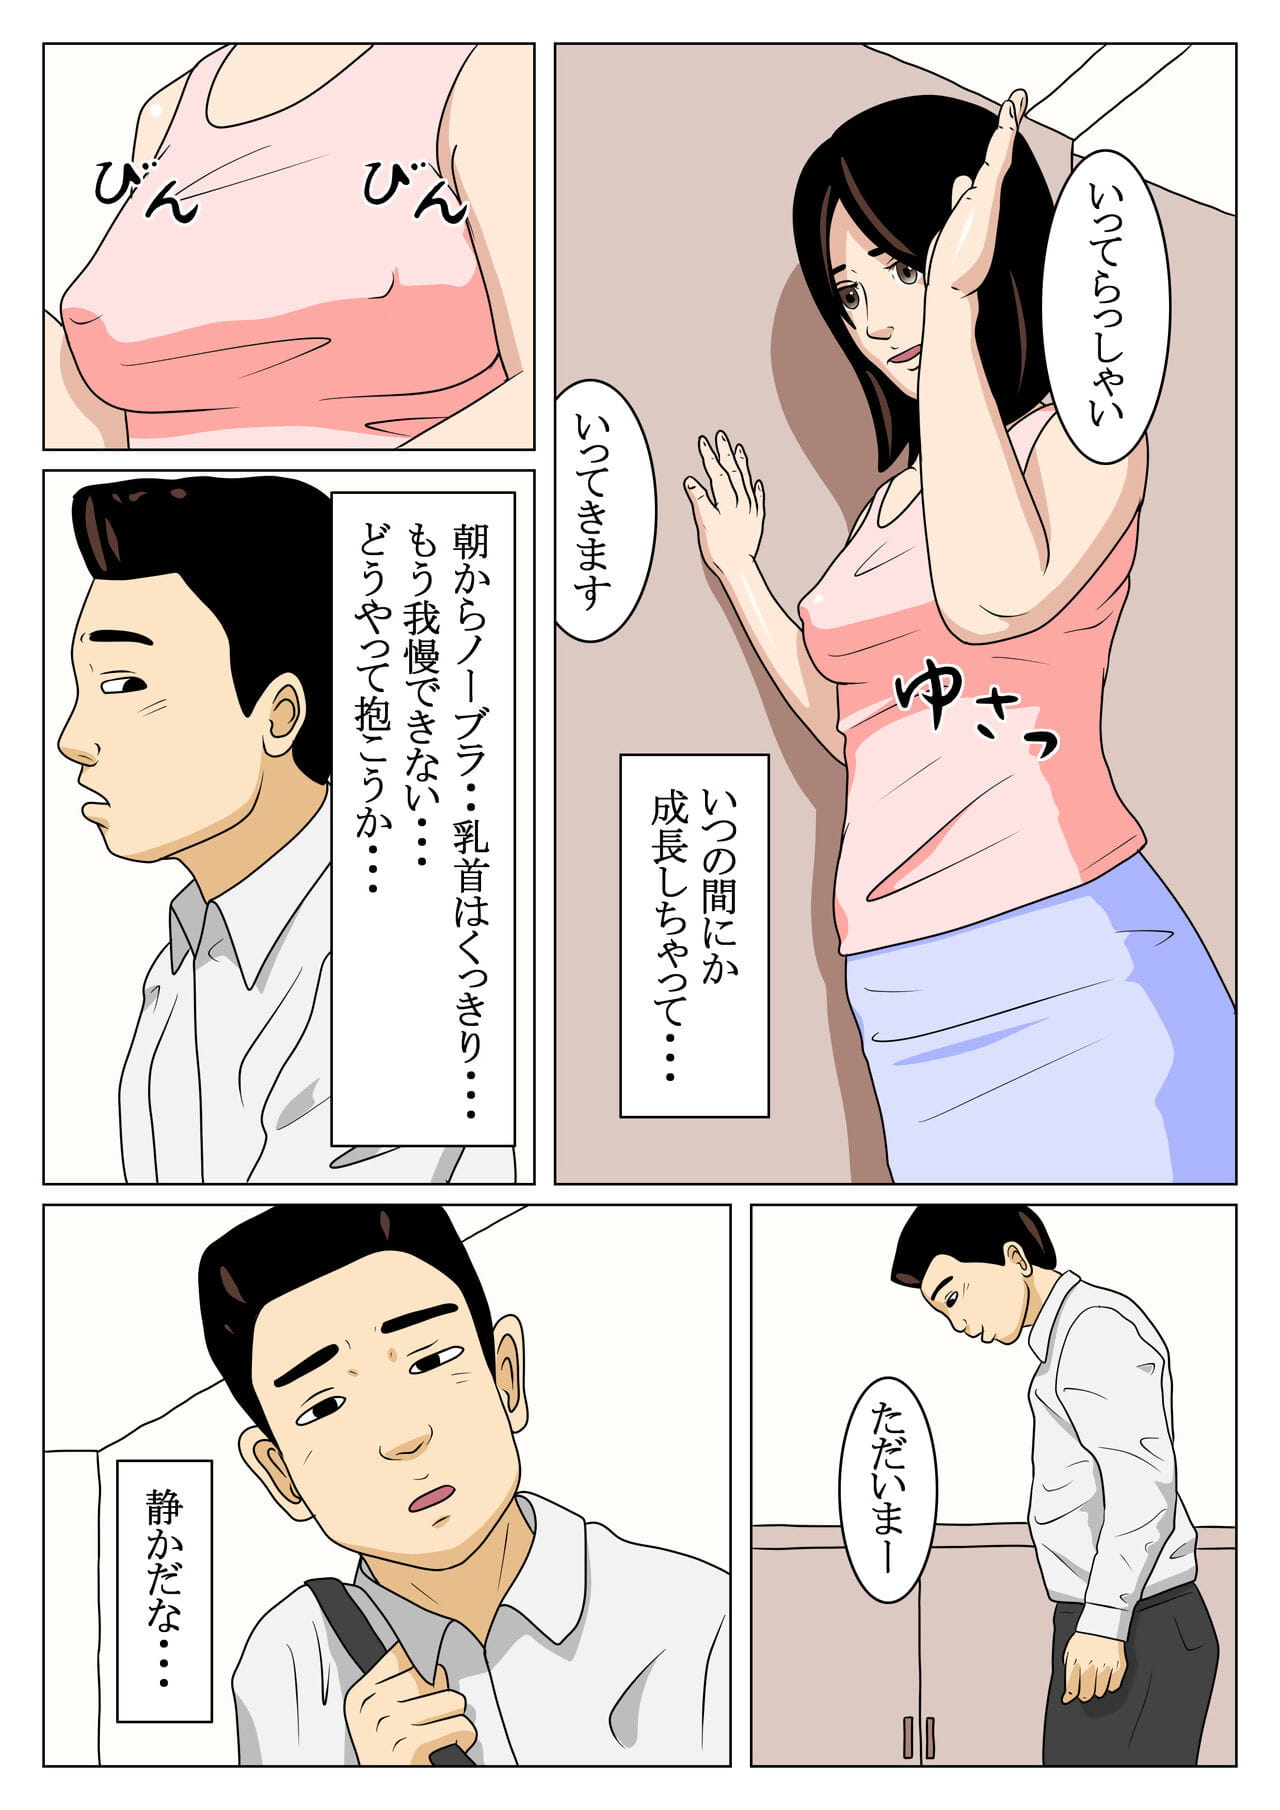 أوياكو soukan يوميكو إلى تاكاشي page 1